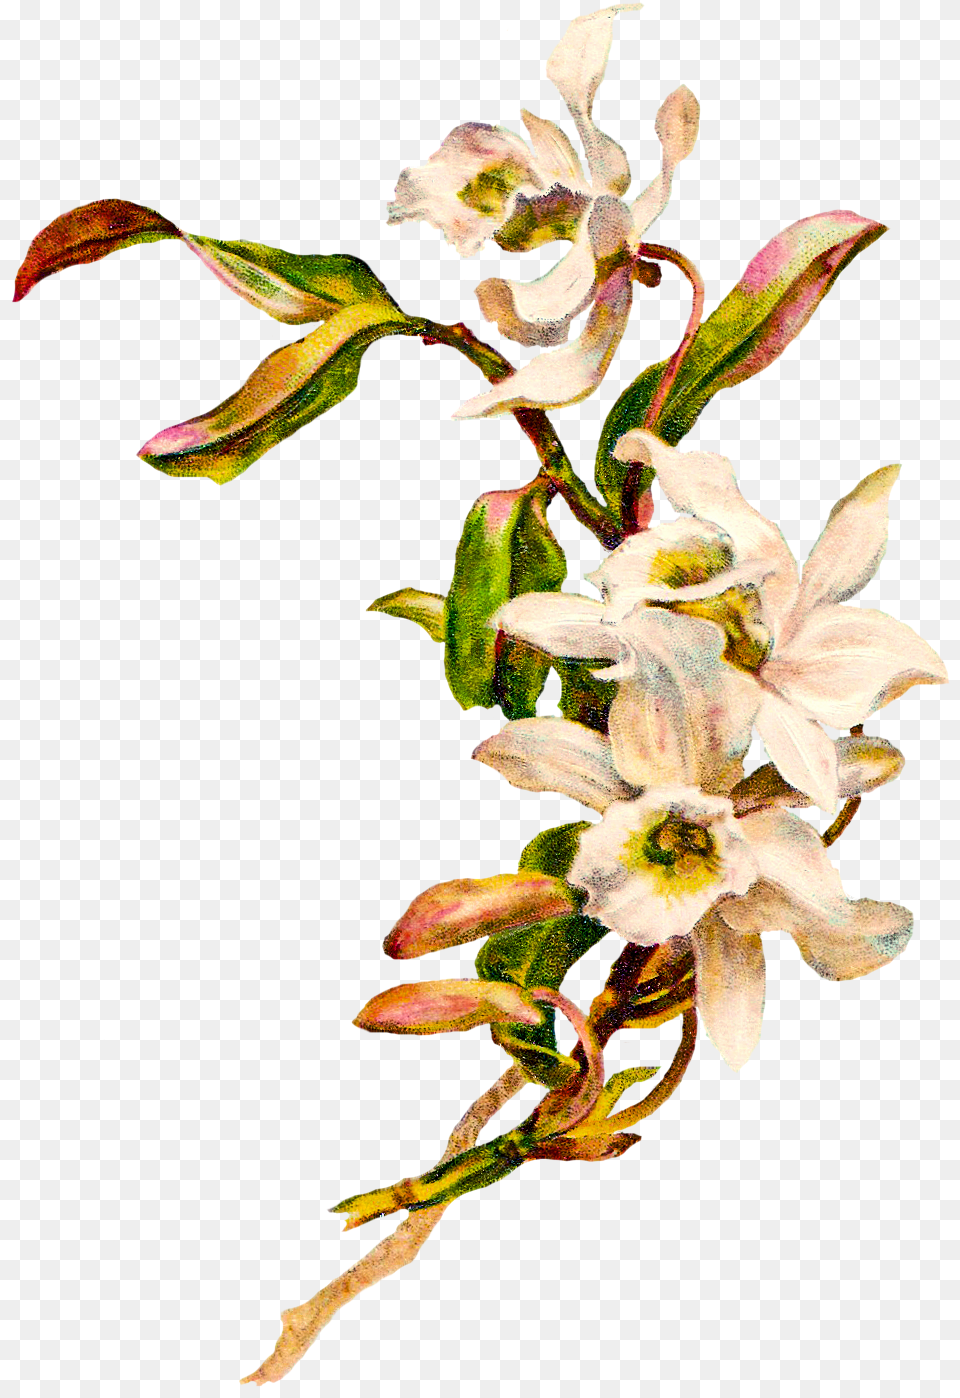 Orchid Flower Clip Art, Acanthaceae, Plant, Petal, Flower Arrangement Free Png Download